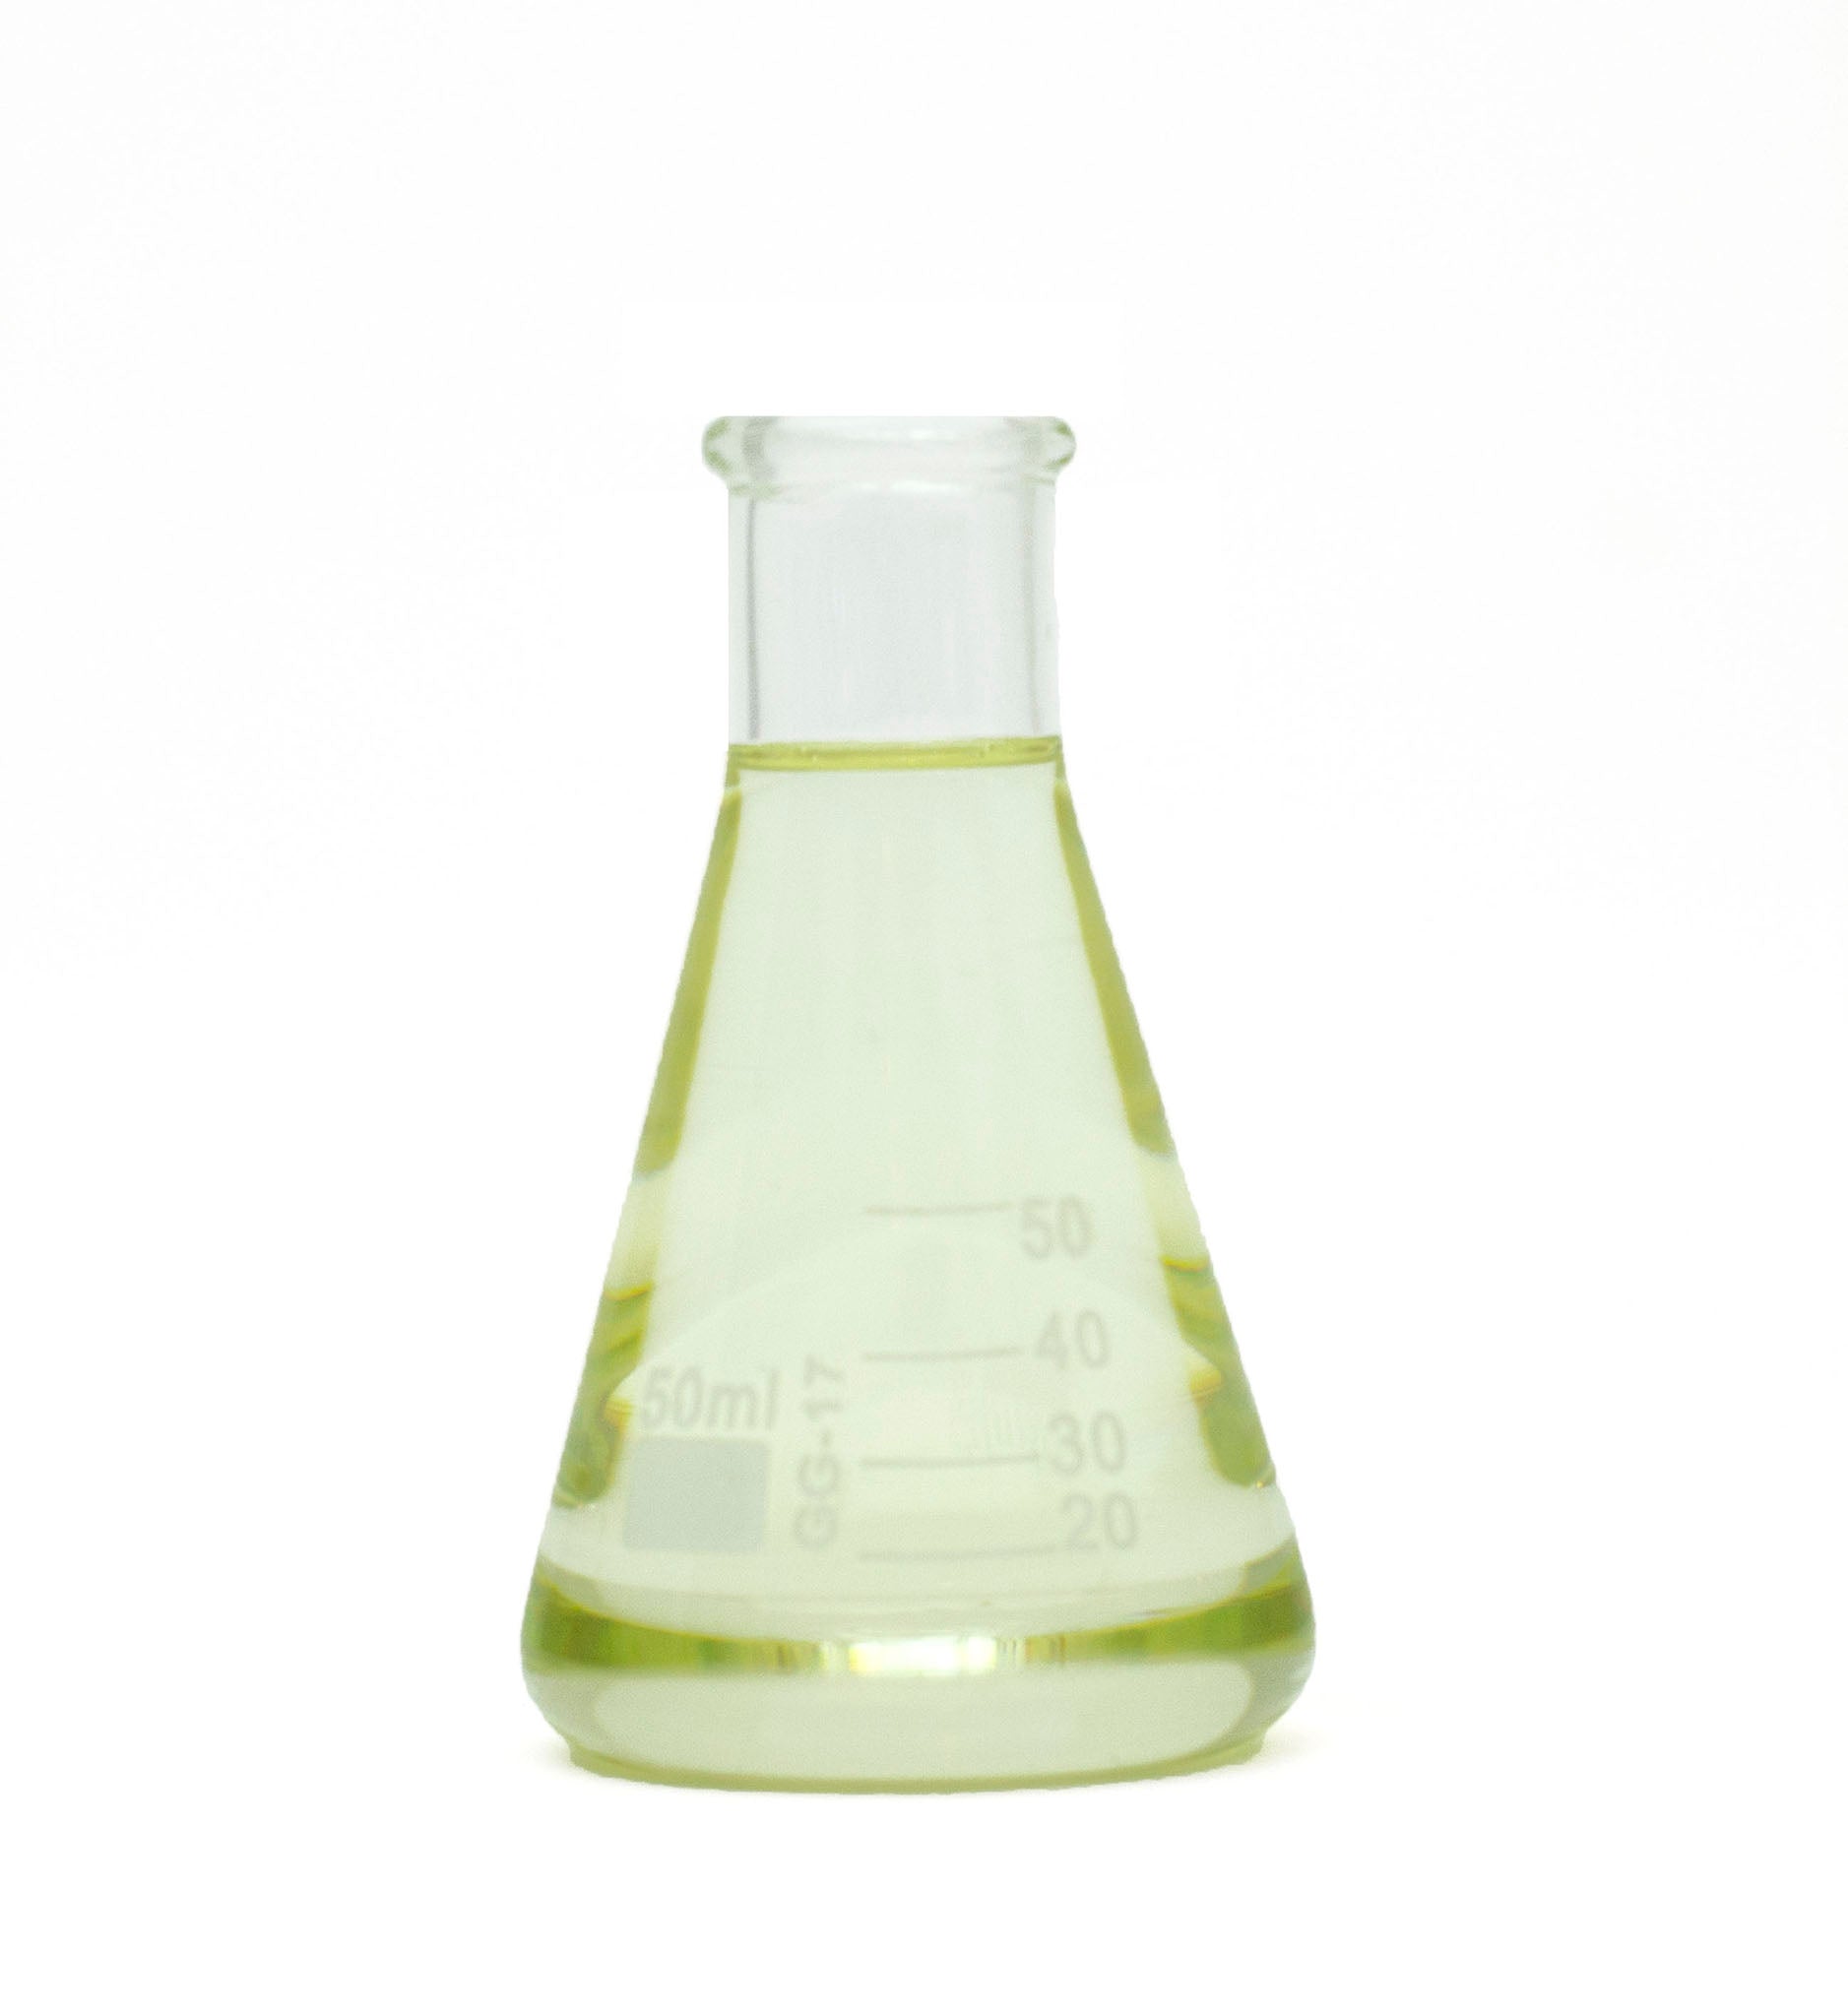 anise seed essential oil in beaker